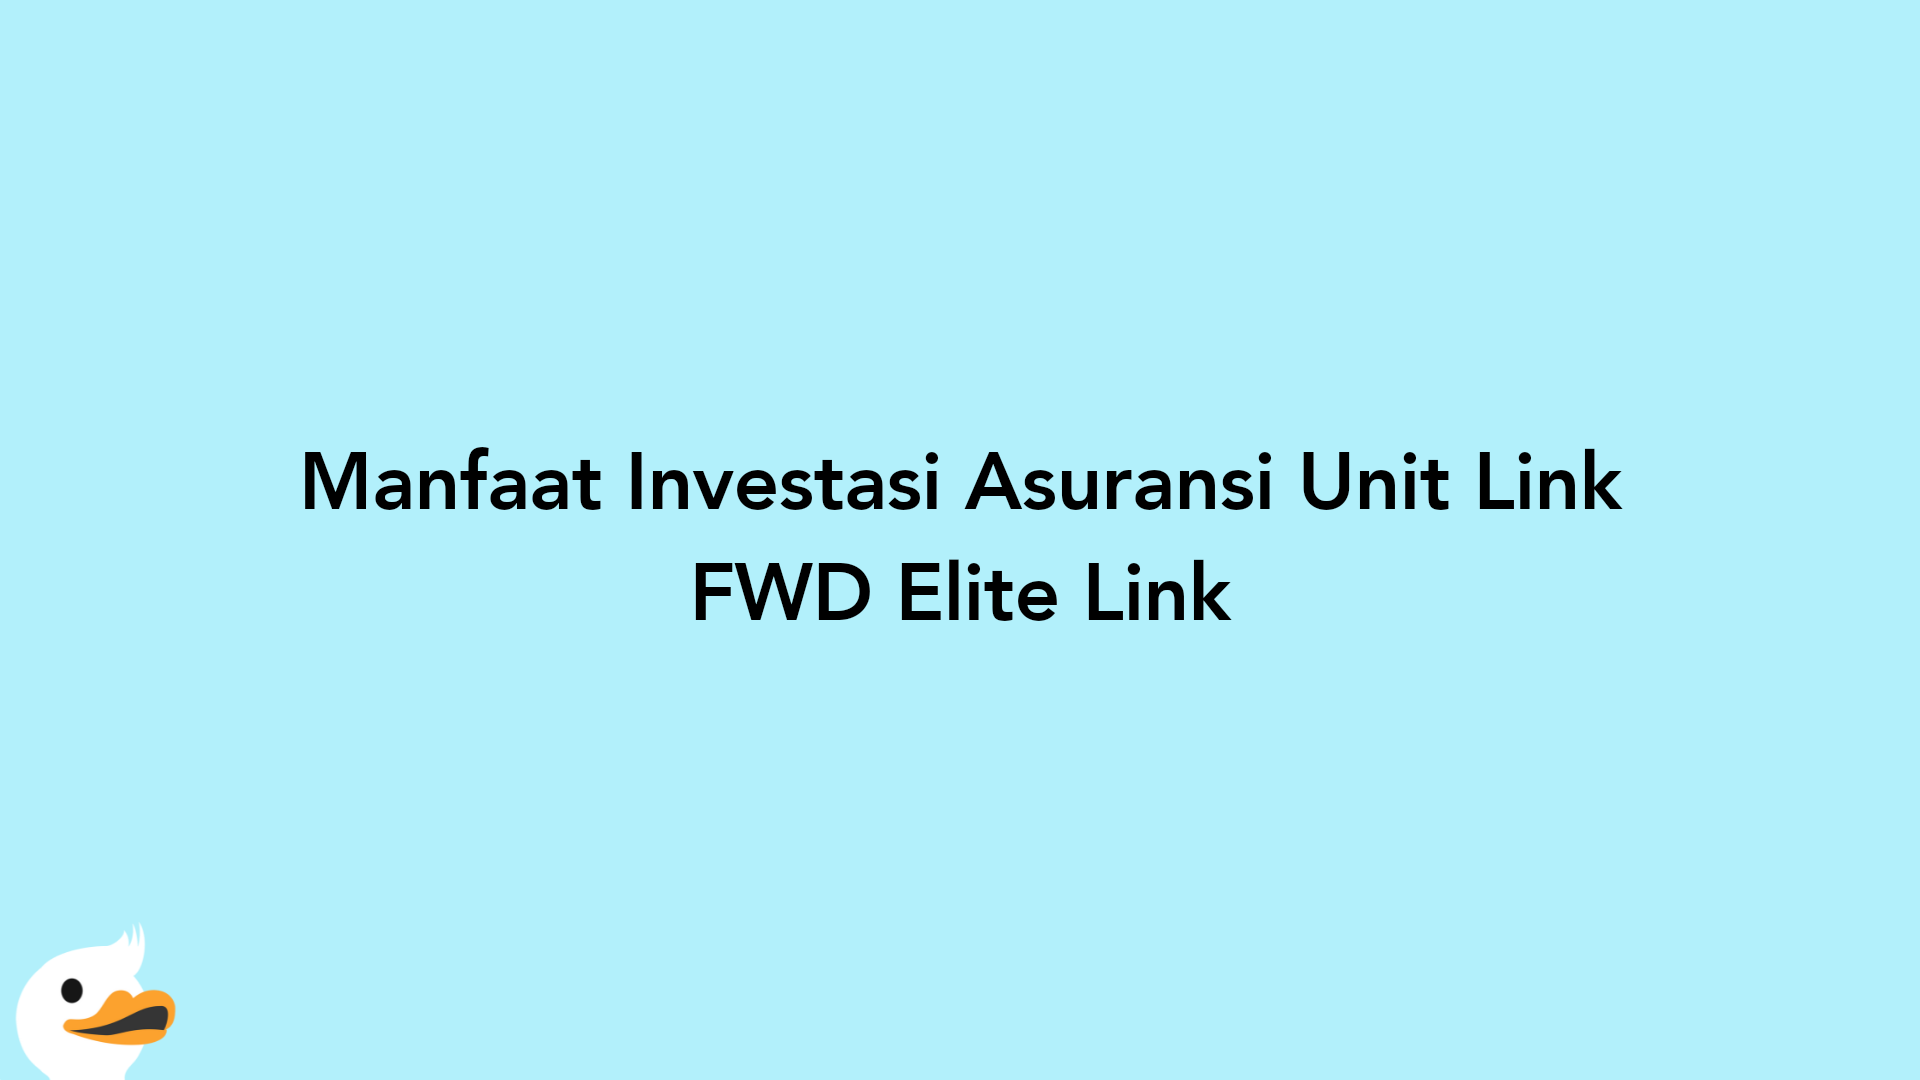 Manfaat Investasi Asuransi Unit Link FWD Elite Link